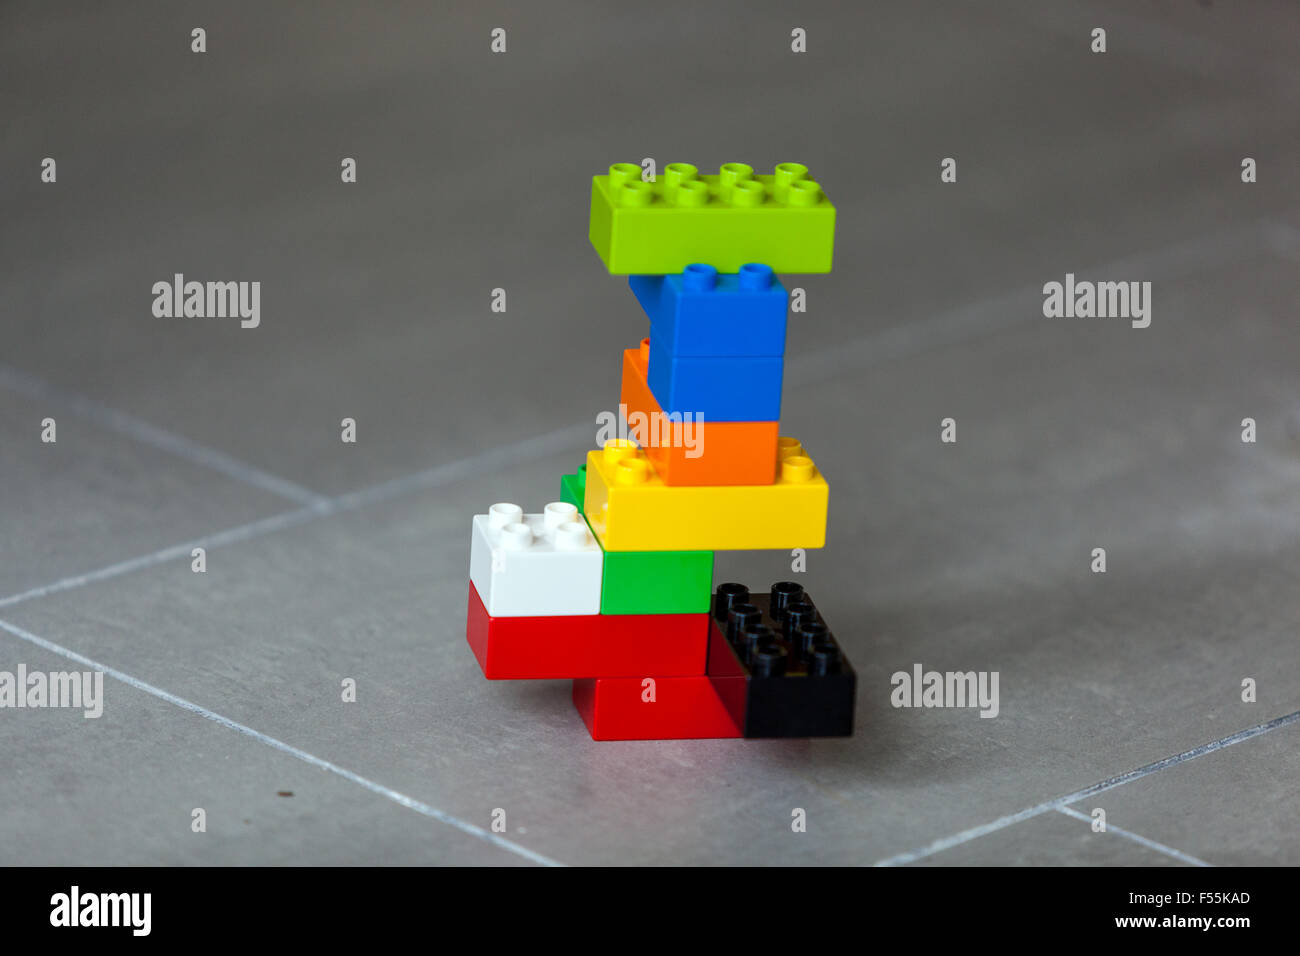 Cubos de plástico, un juego que se desarrolla la creatividad e imaginación. Foto de stock